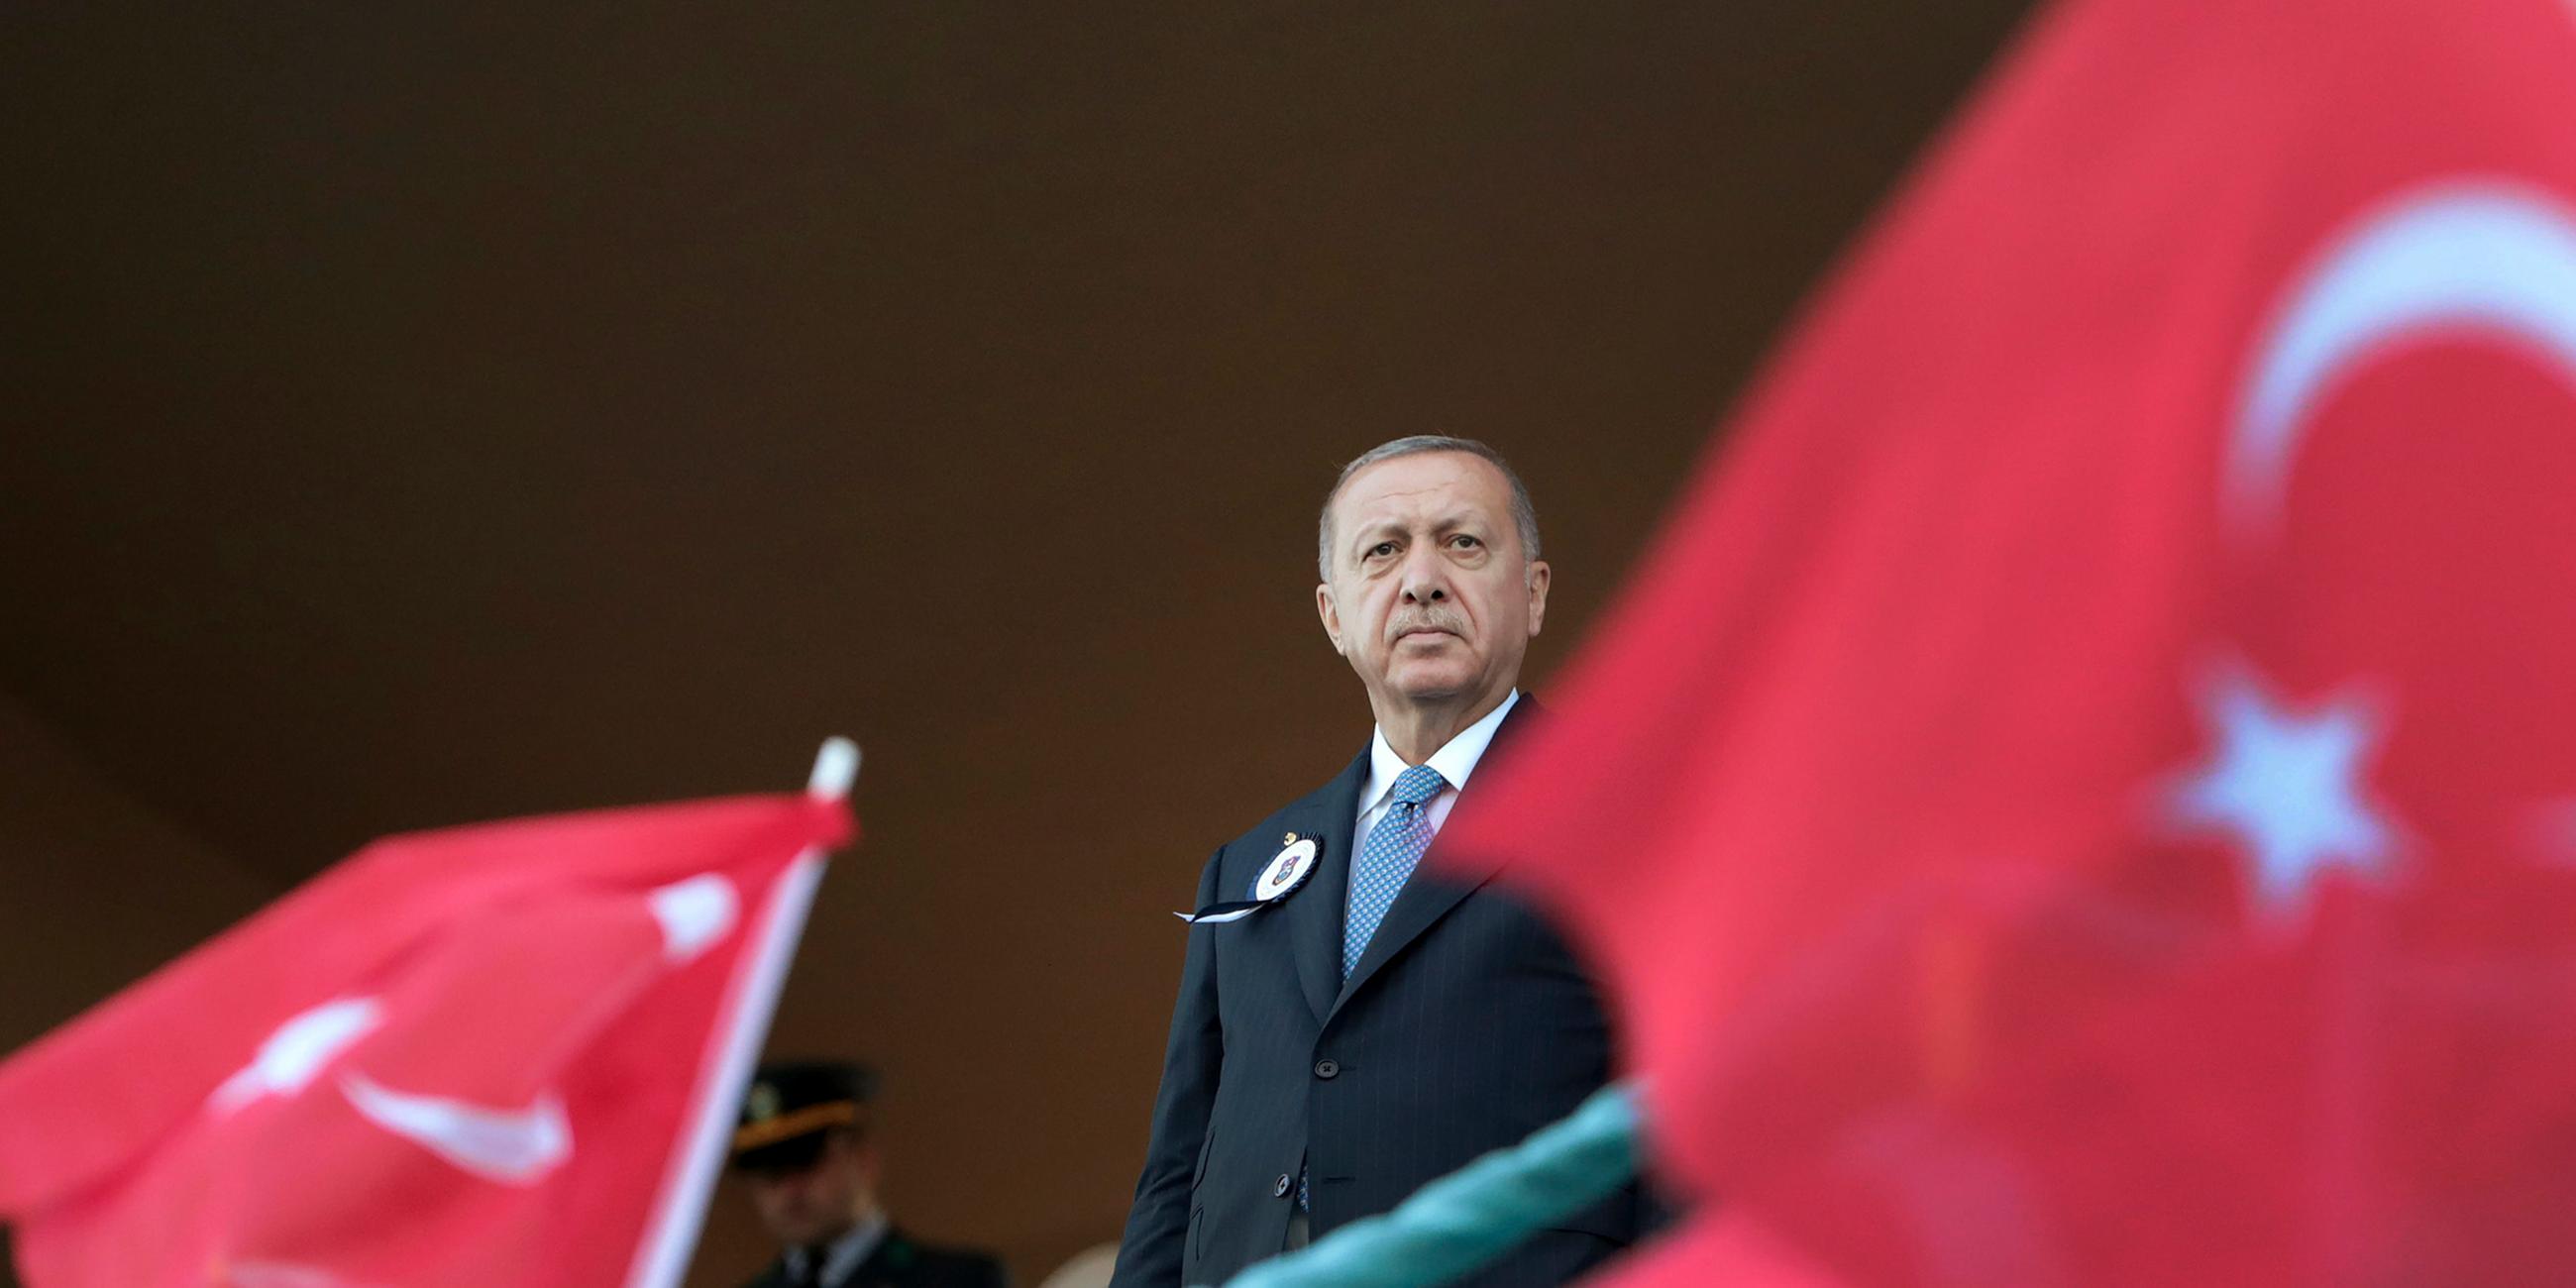 Archiv: Der türkische Präsident Recep Tayyip Erdogan während einer Zeremonie in Instanbul am 31.08.2019